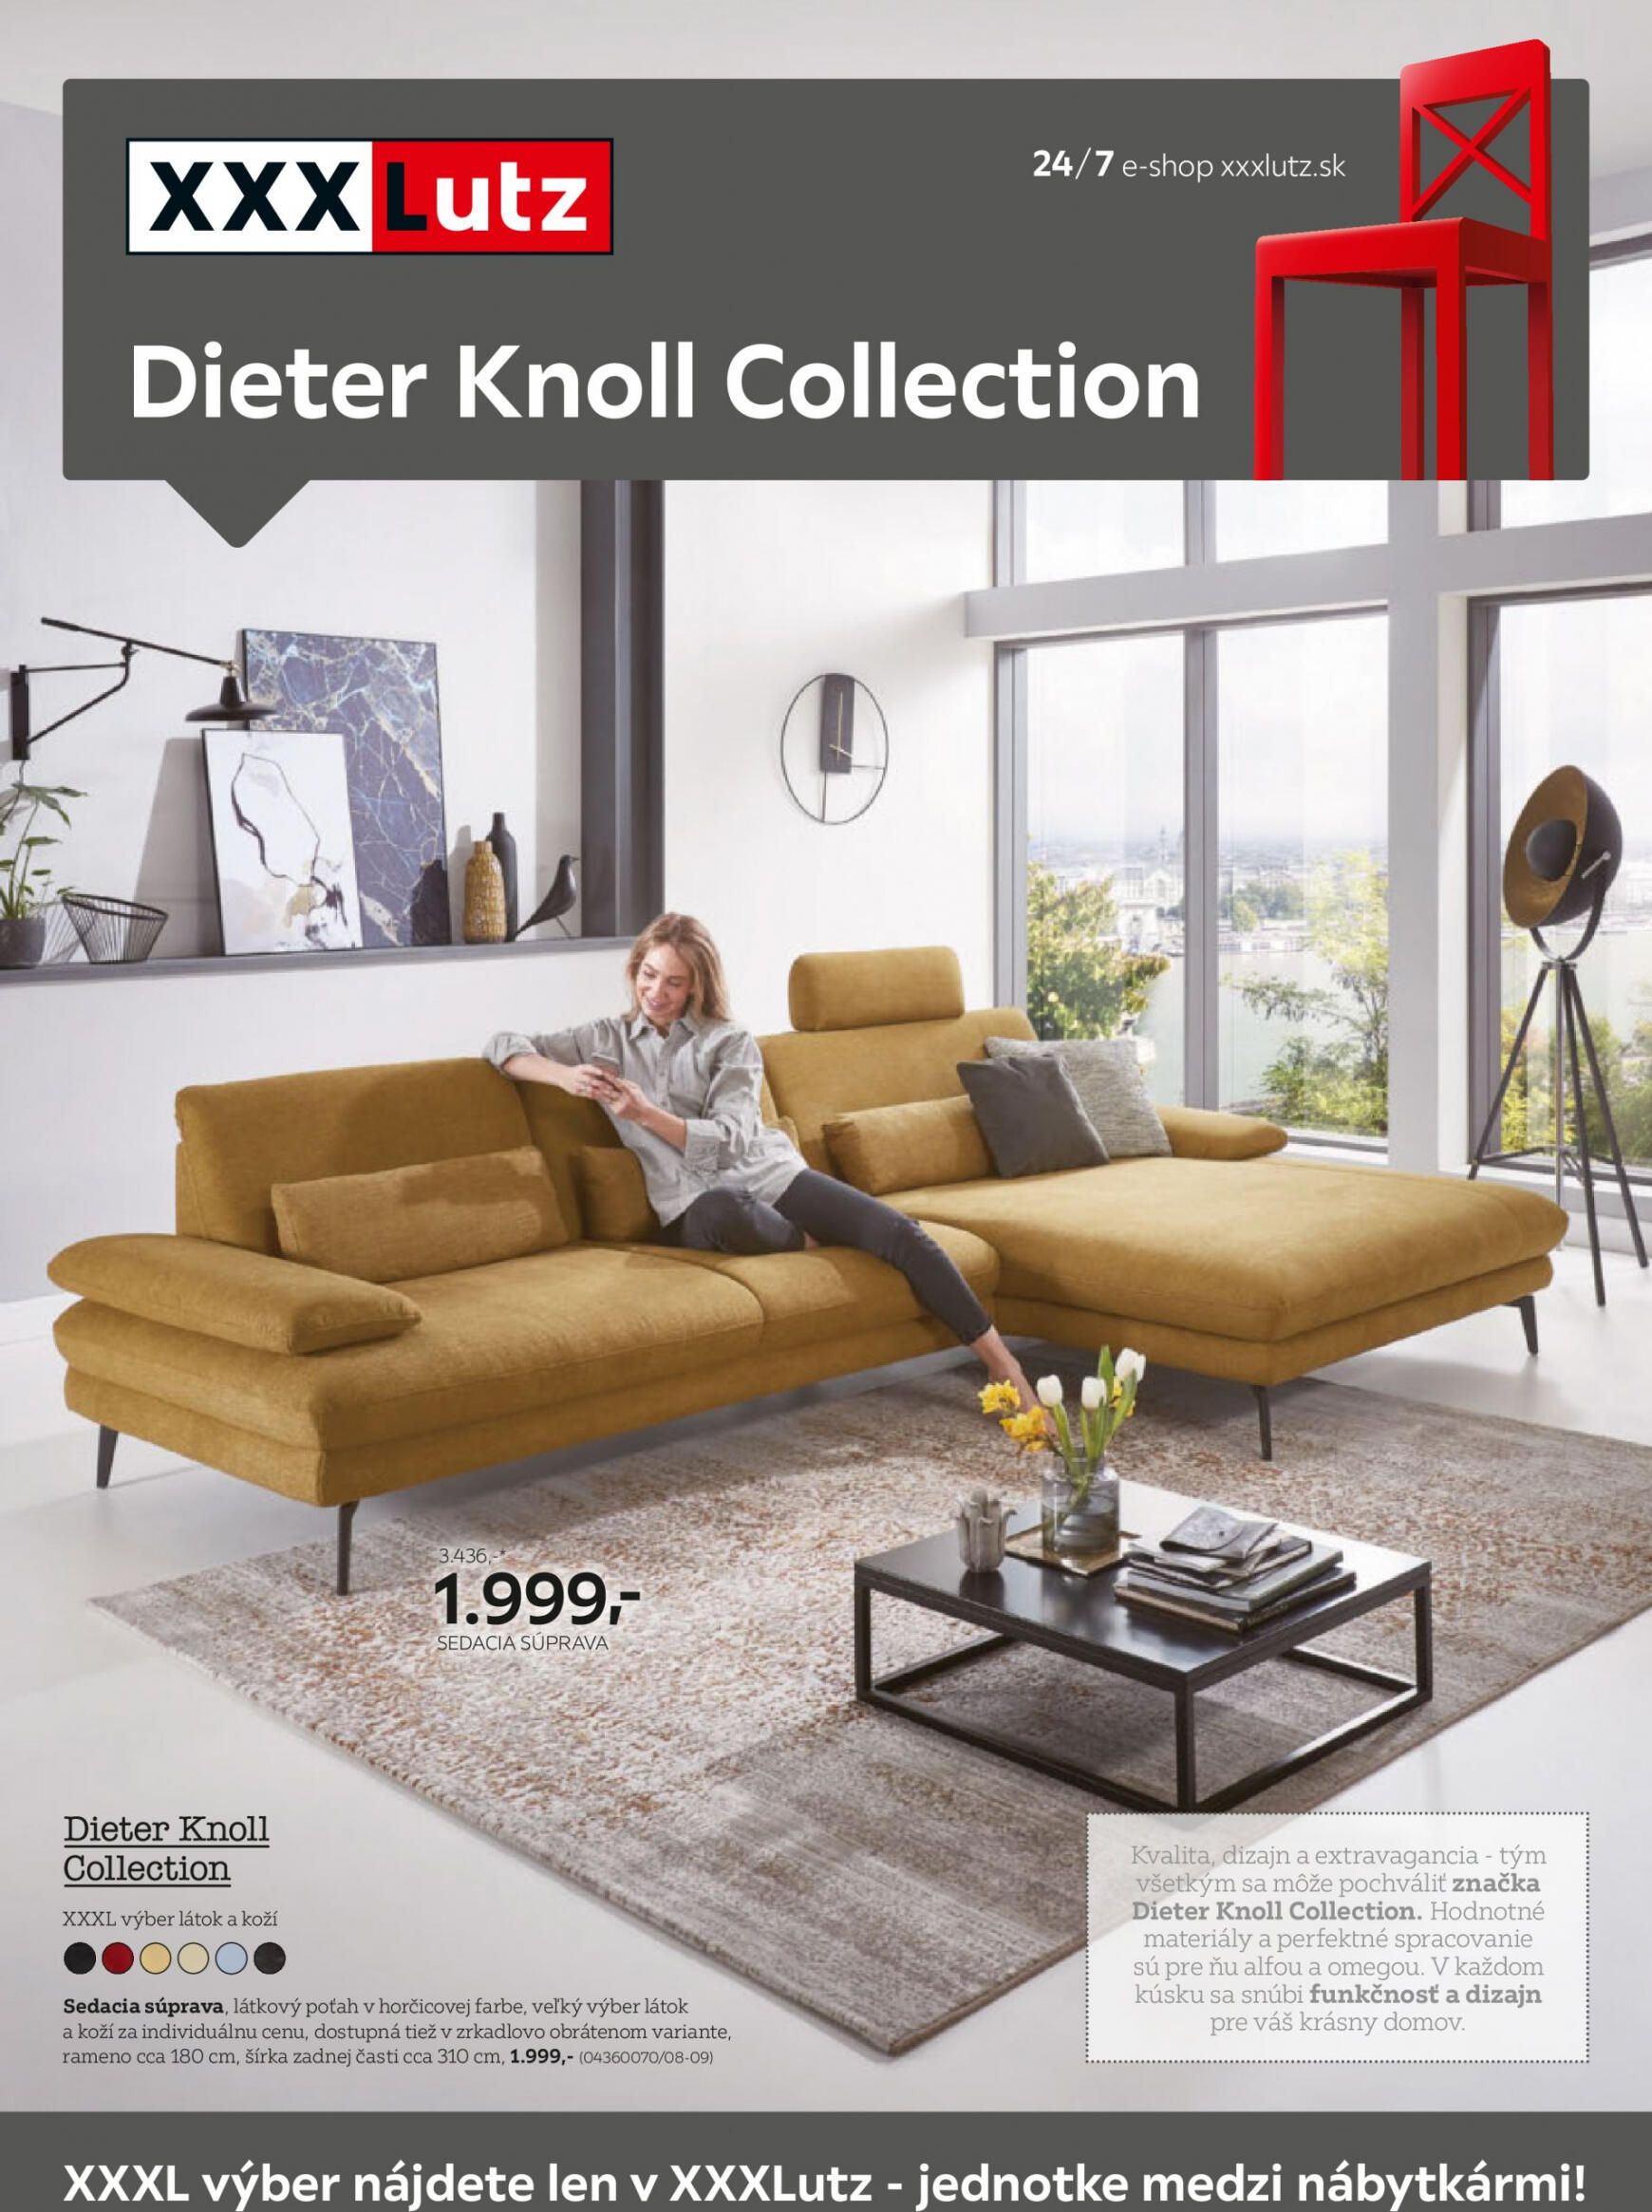 xxxlutz - XXXLutz - Dieter Knoll Colection